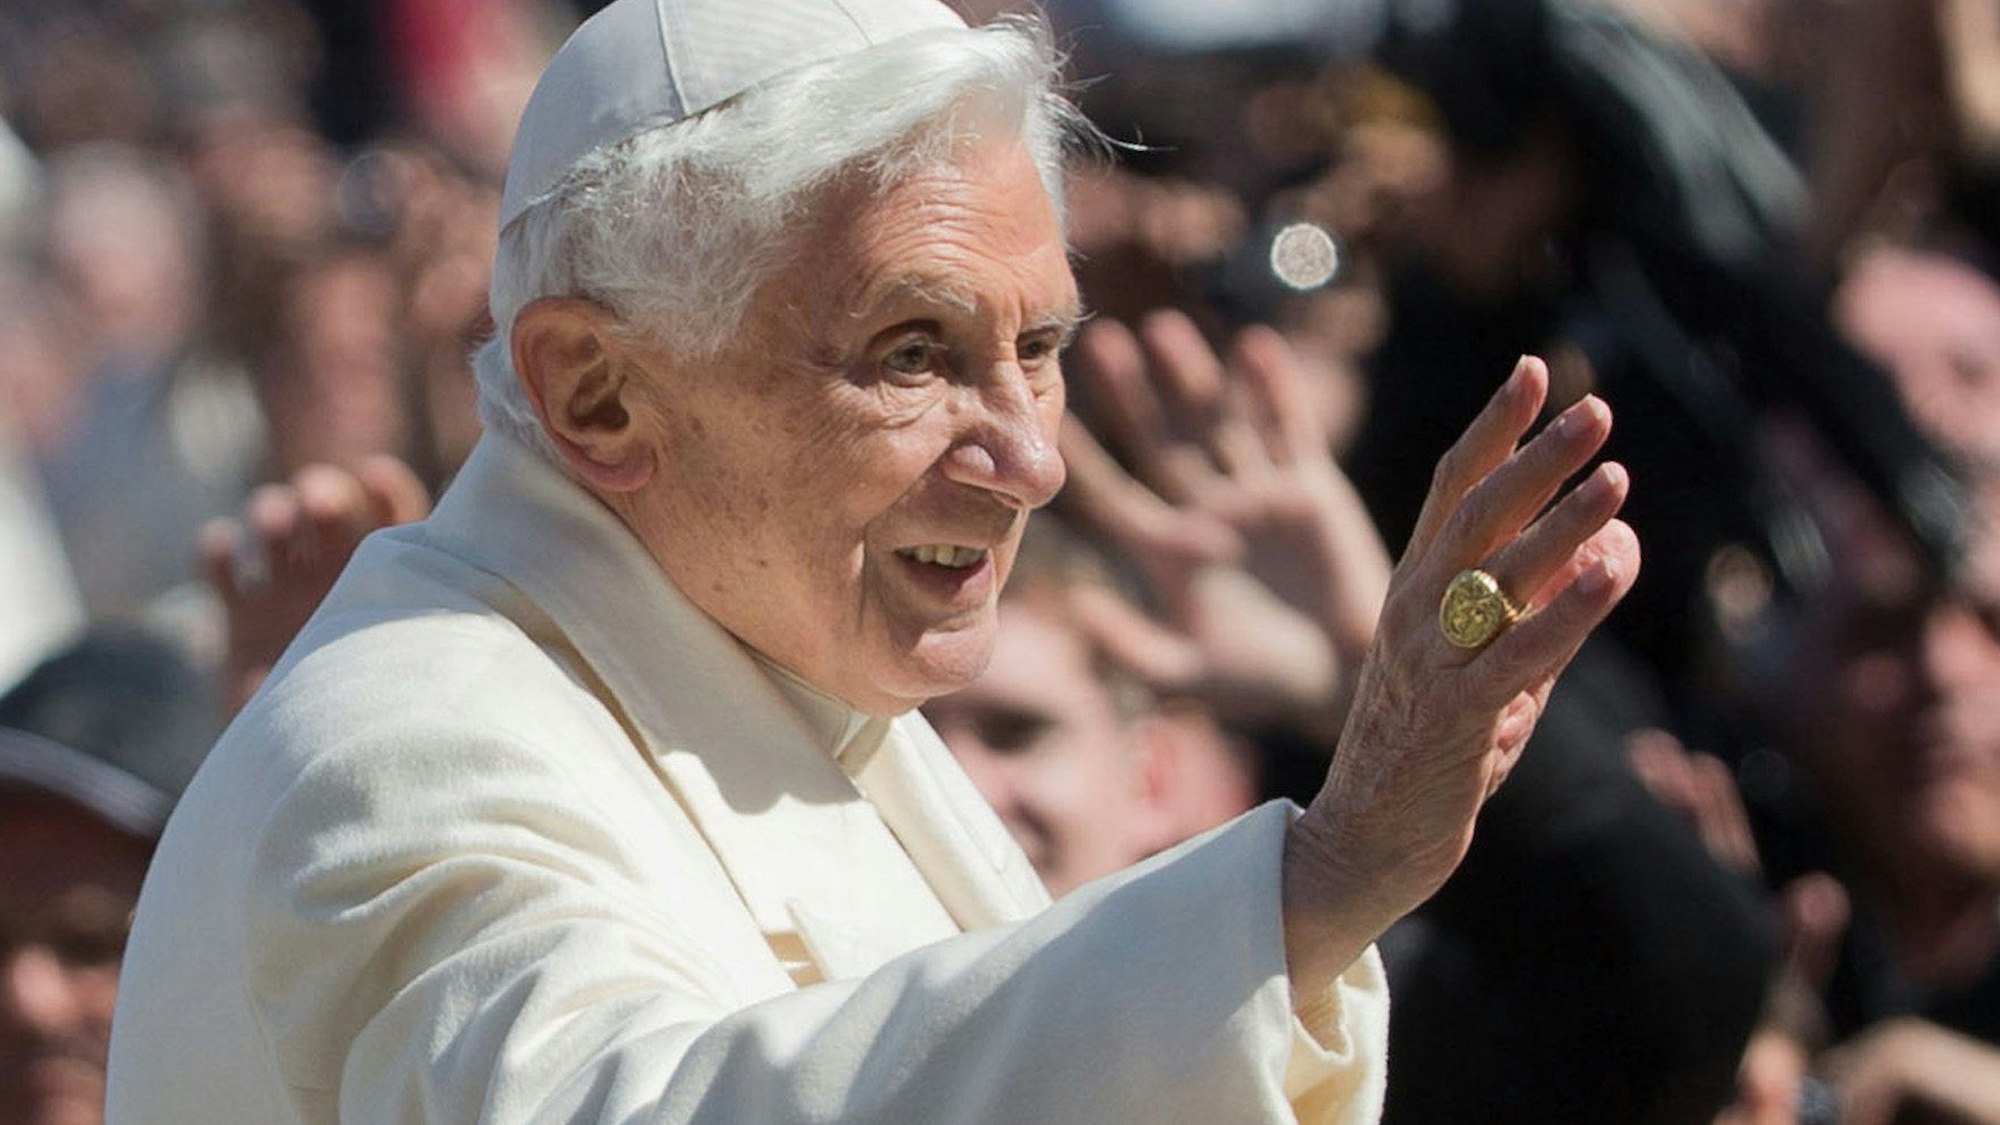 Der damalige Papst Benedikt XVI. fährt im Papamobil im Vatikan in Rom nach der Generalaudienz vom Petersplatz ab und winkt.